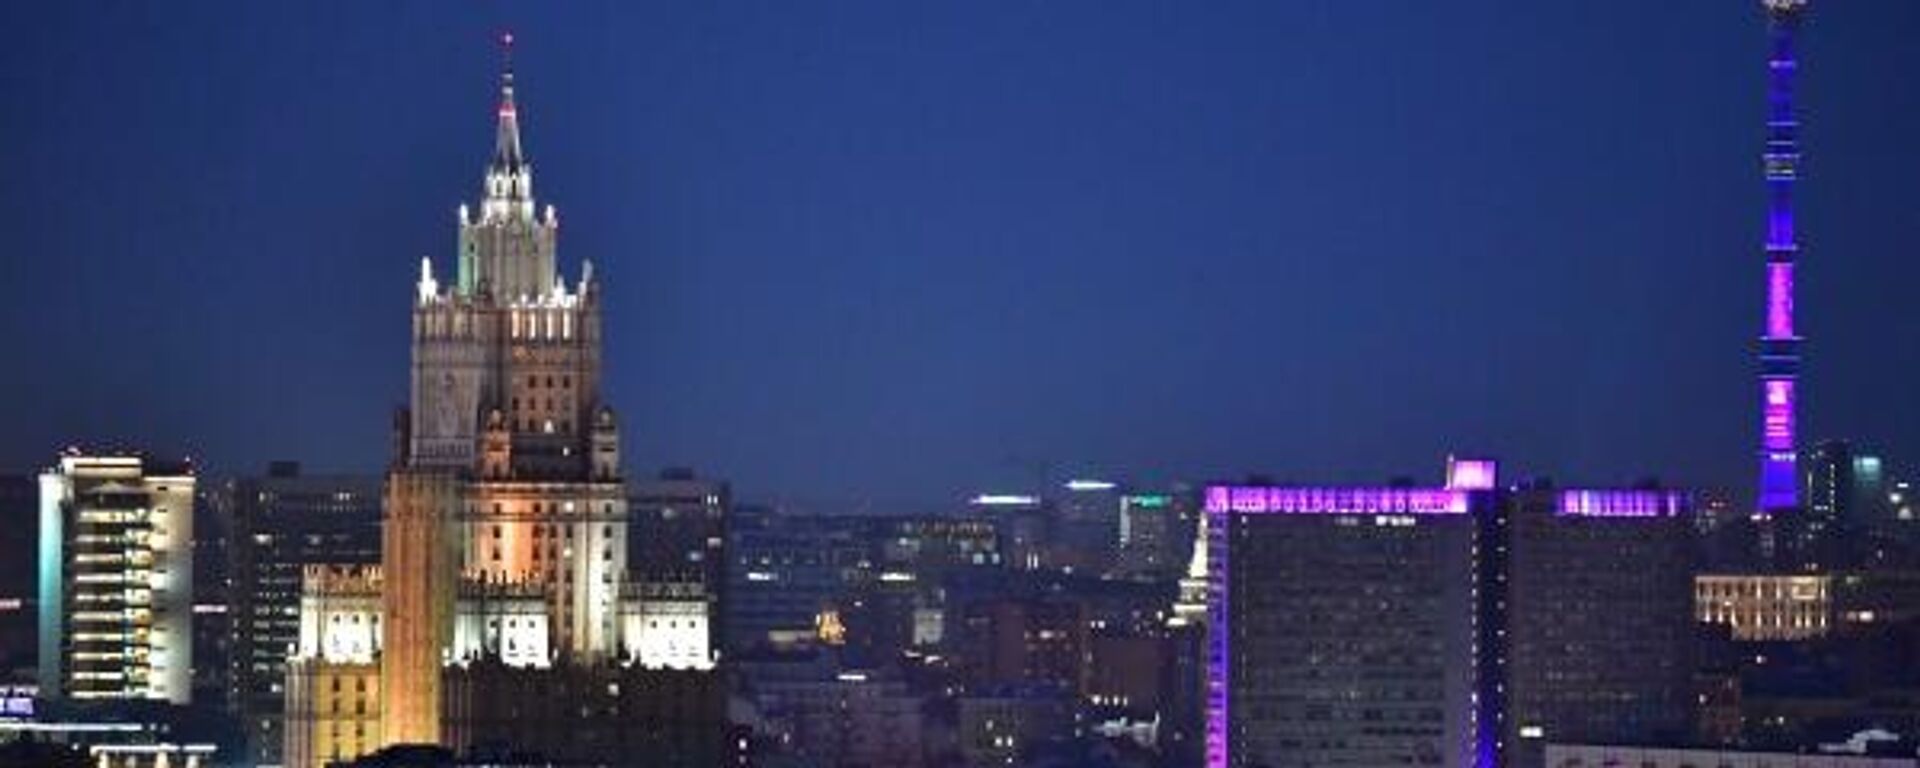 O prédio principal do Ministério das Relações Exteriores da Rússia é fotografado depois que as luzes foram apagadas durante a campanha ambiental da Hora do Planeta em Moscou, Rússia (foto de arquivo) - Sputnik Brasil, 1920, 28.04.2023